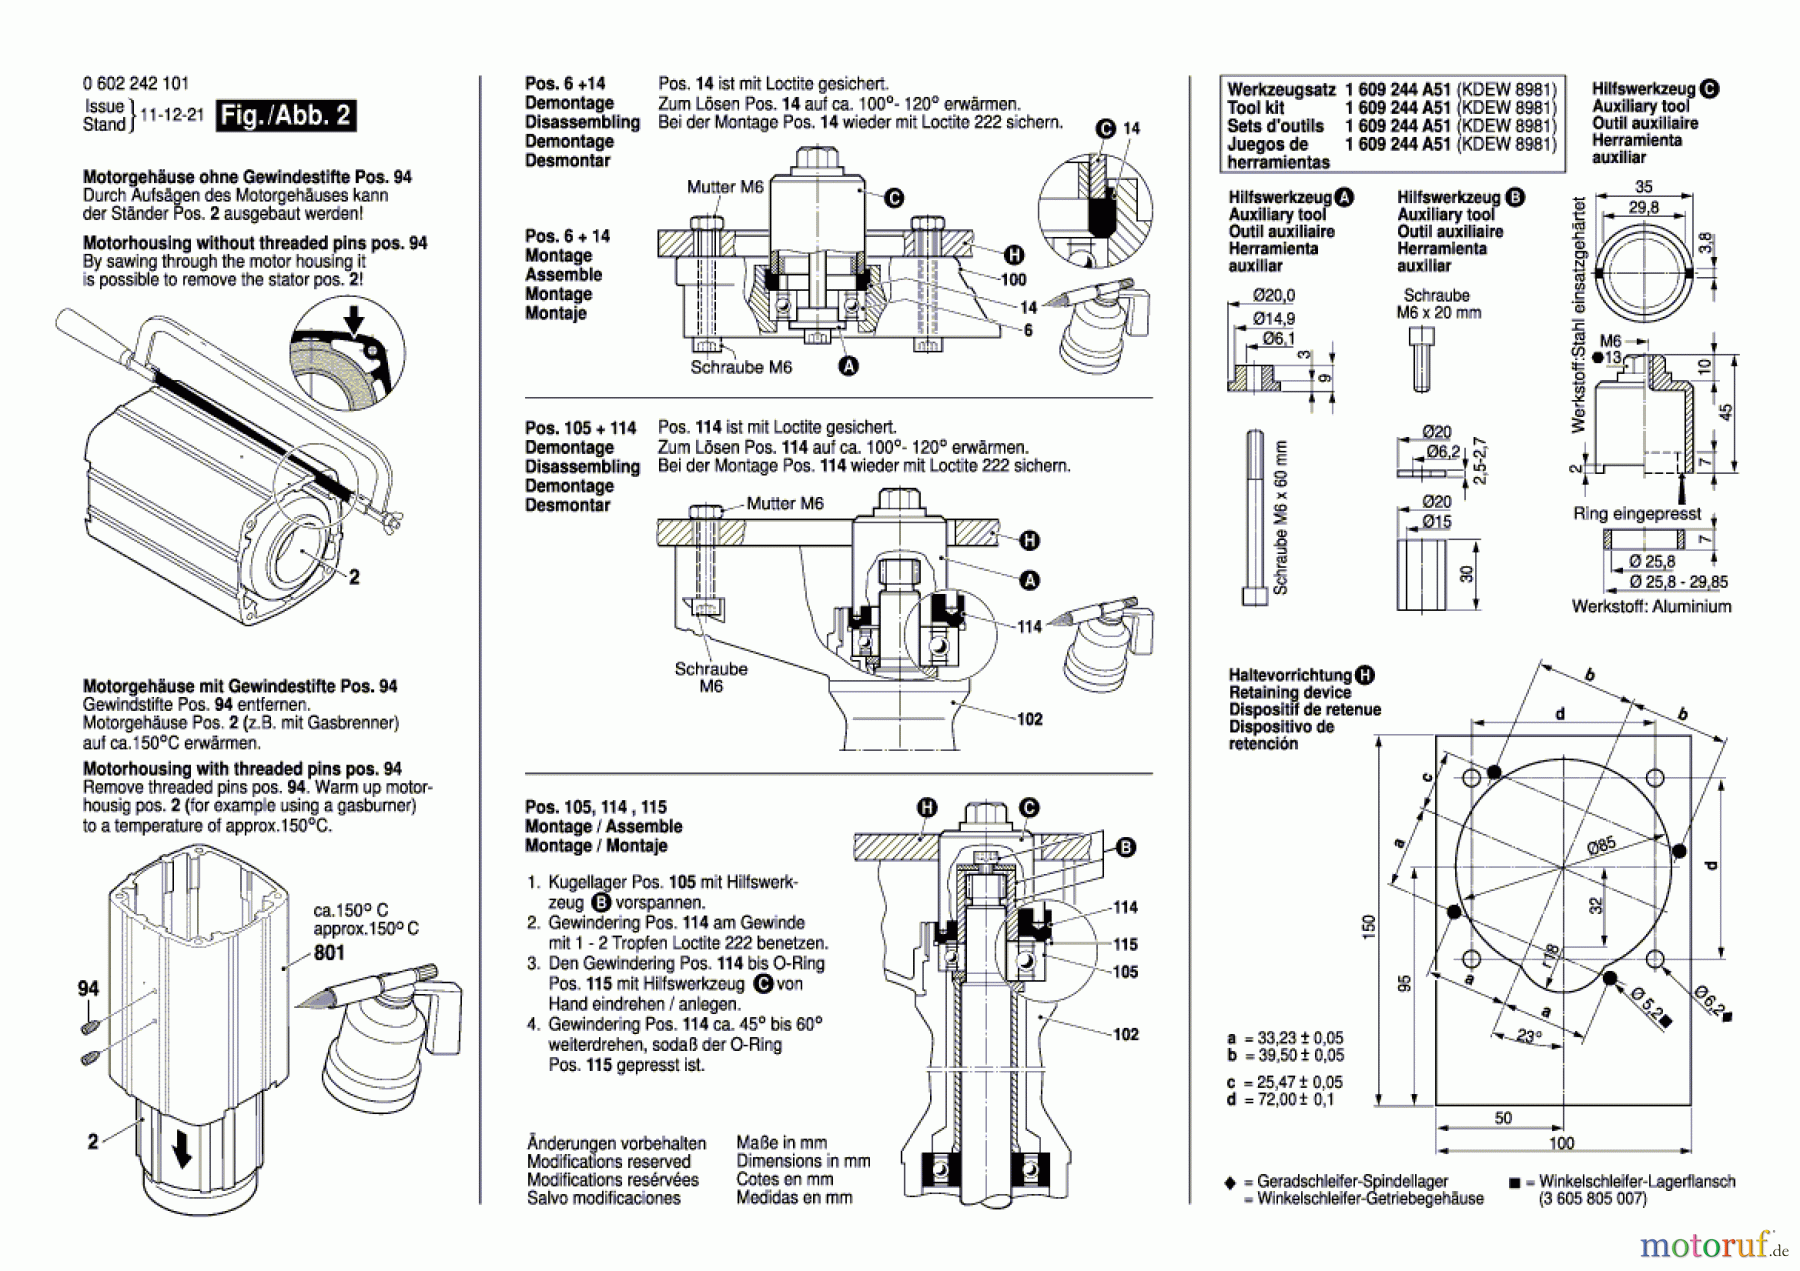  Bosch Werkzeug Hf-Geradschleifer 2 242 Seite 2